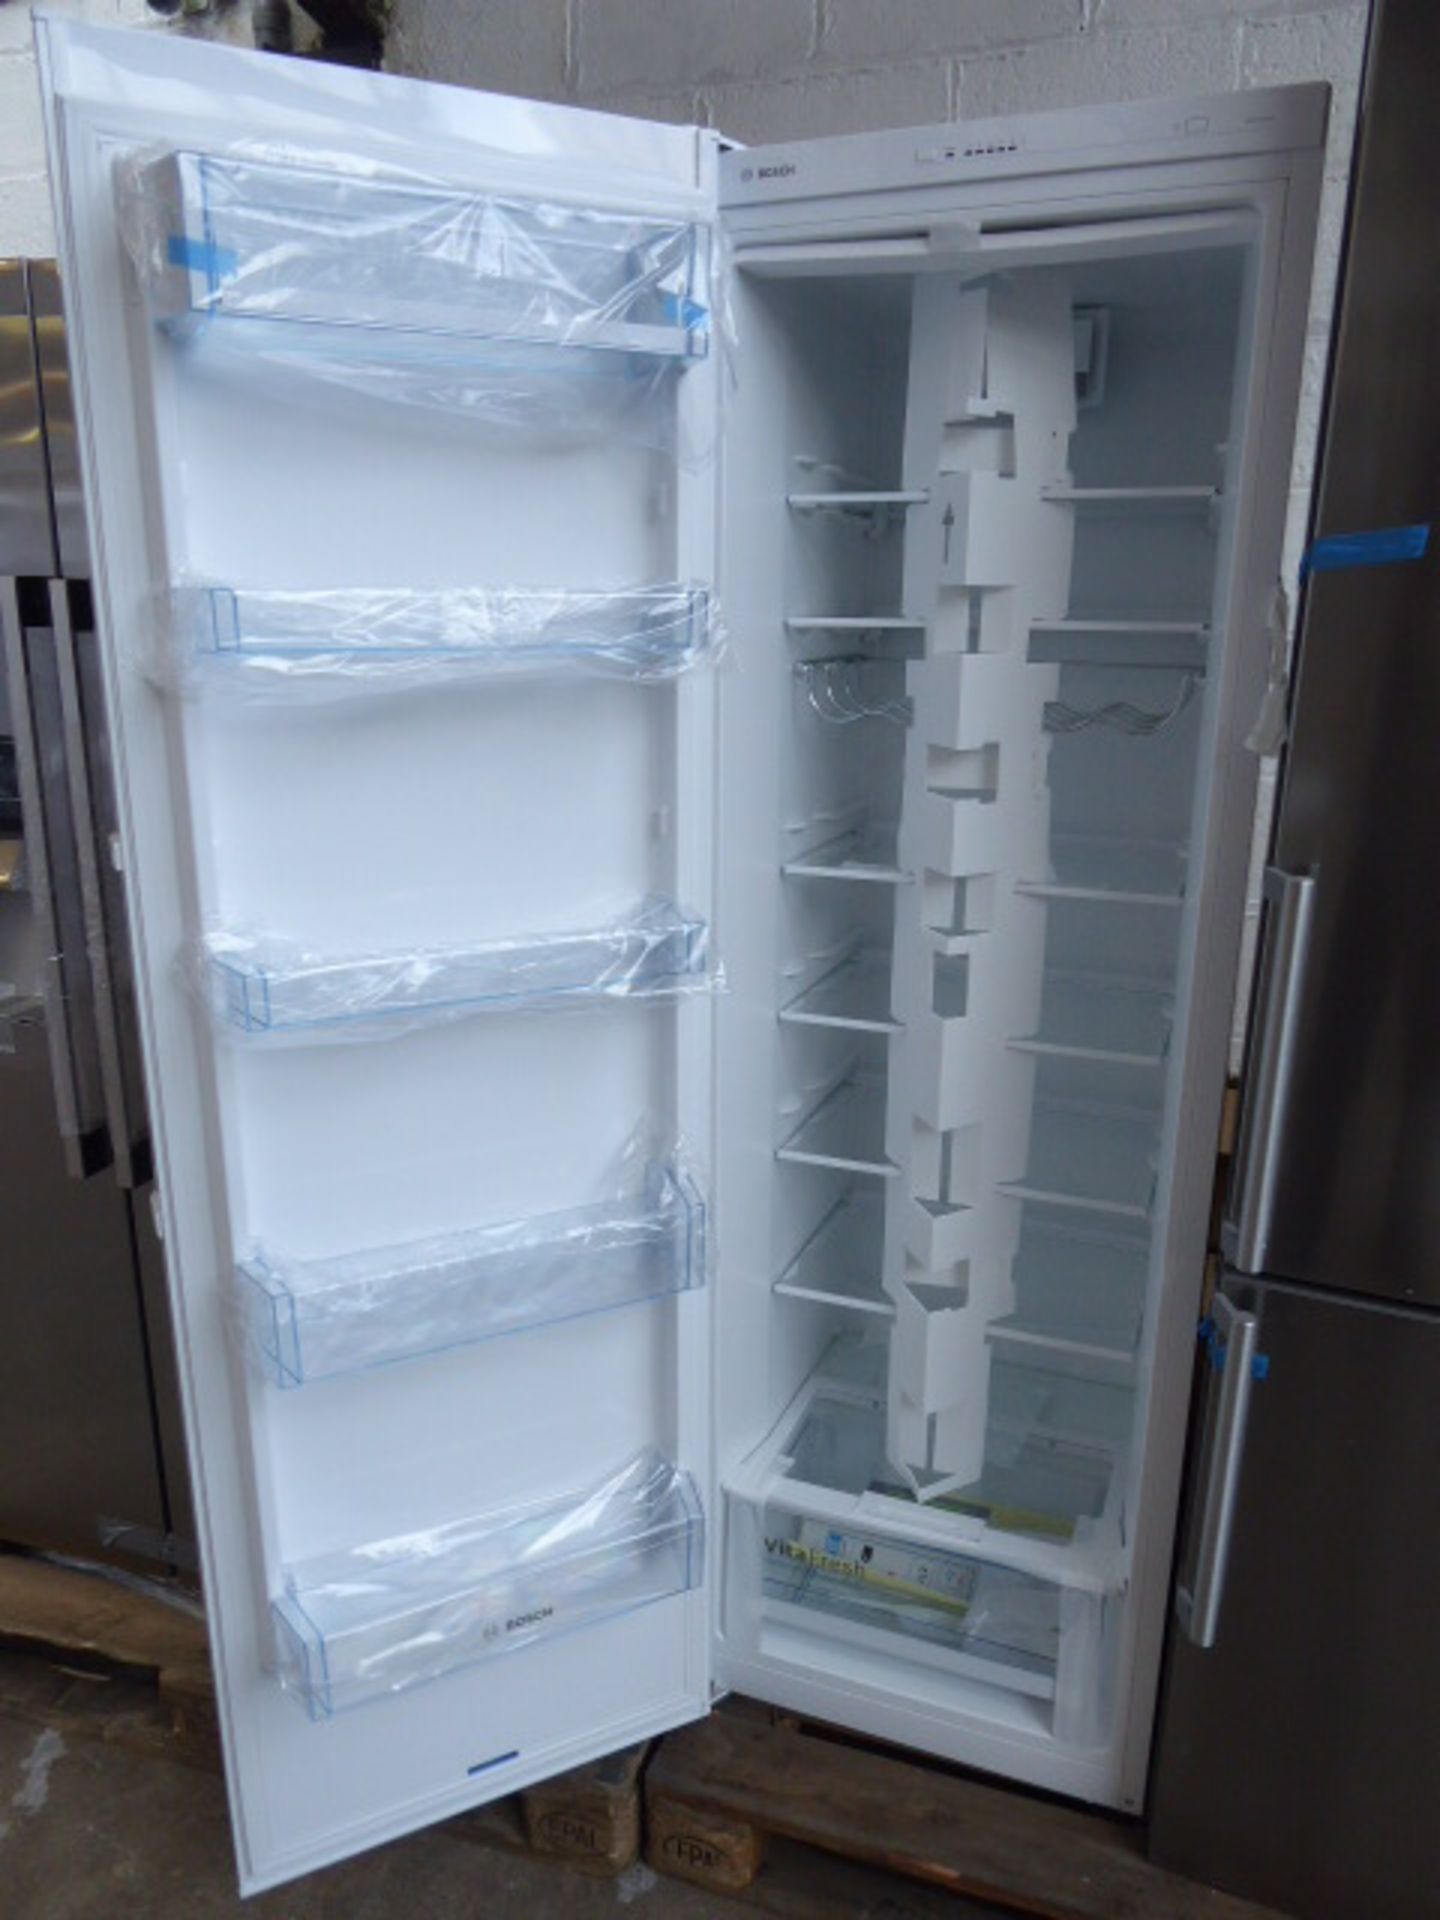 KSV36VWEPGB Bosch Free-standing refrigerator - Image 2 of 2